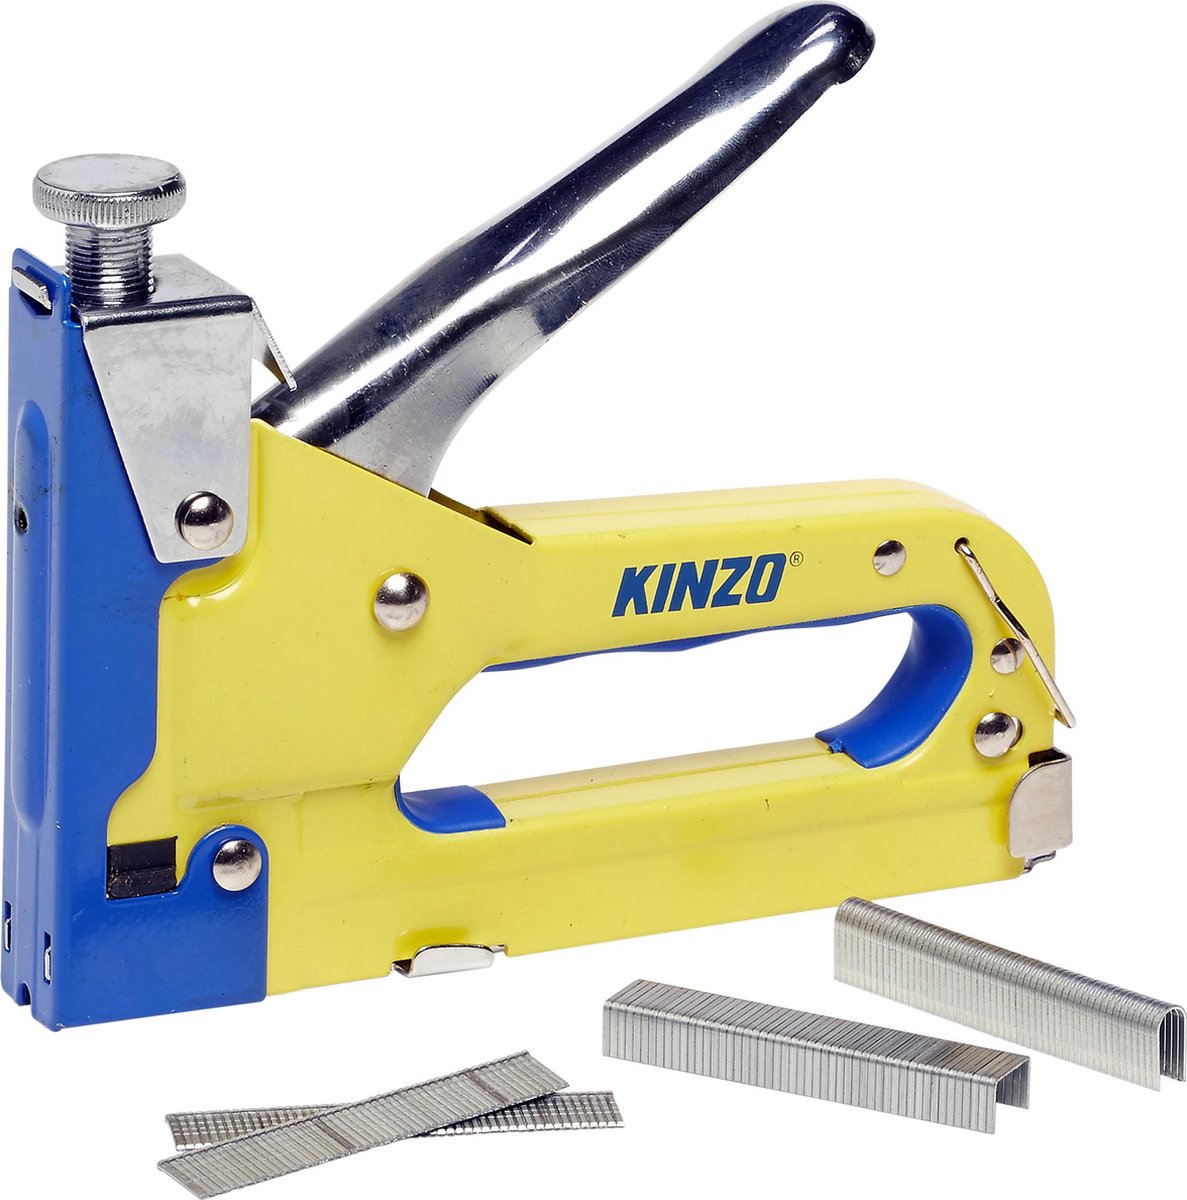 Kinzo Tacker Nietmachine - Incl. 1500 Spijkers En Nieten - Voor Vloerbedekking En Hout - Traploos Instelbaar - Geel